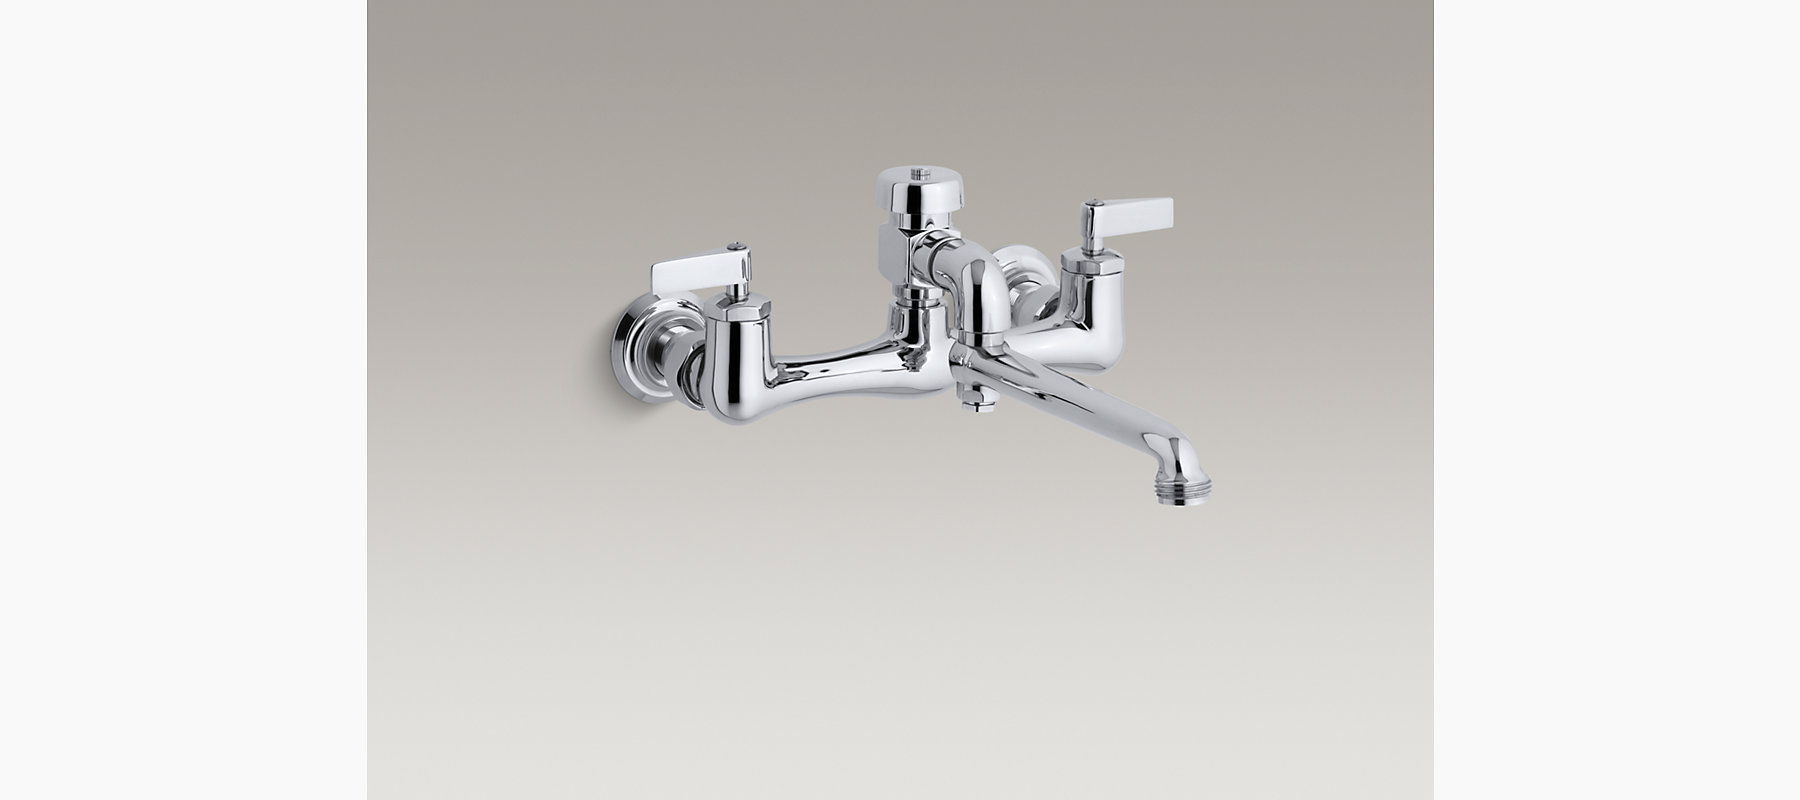 K-13625 | Double lever handle service sink faucet | KOHLER